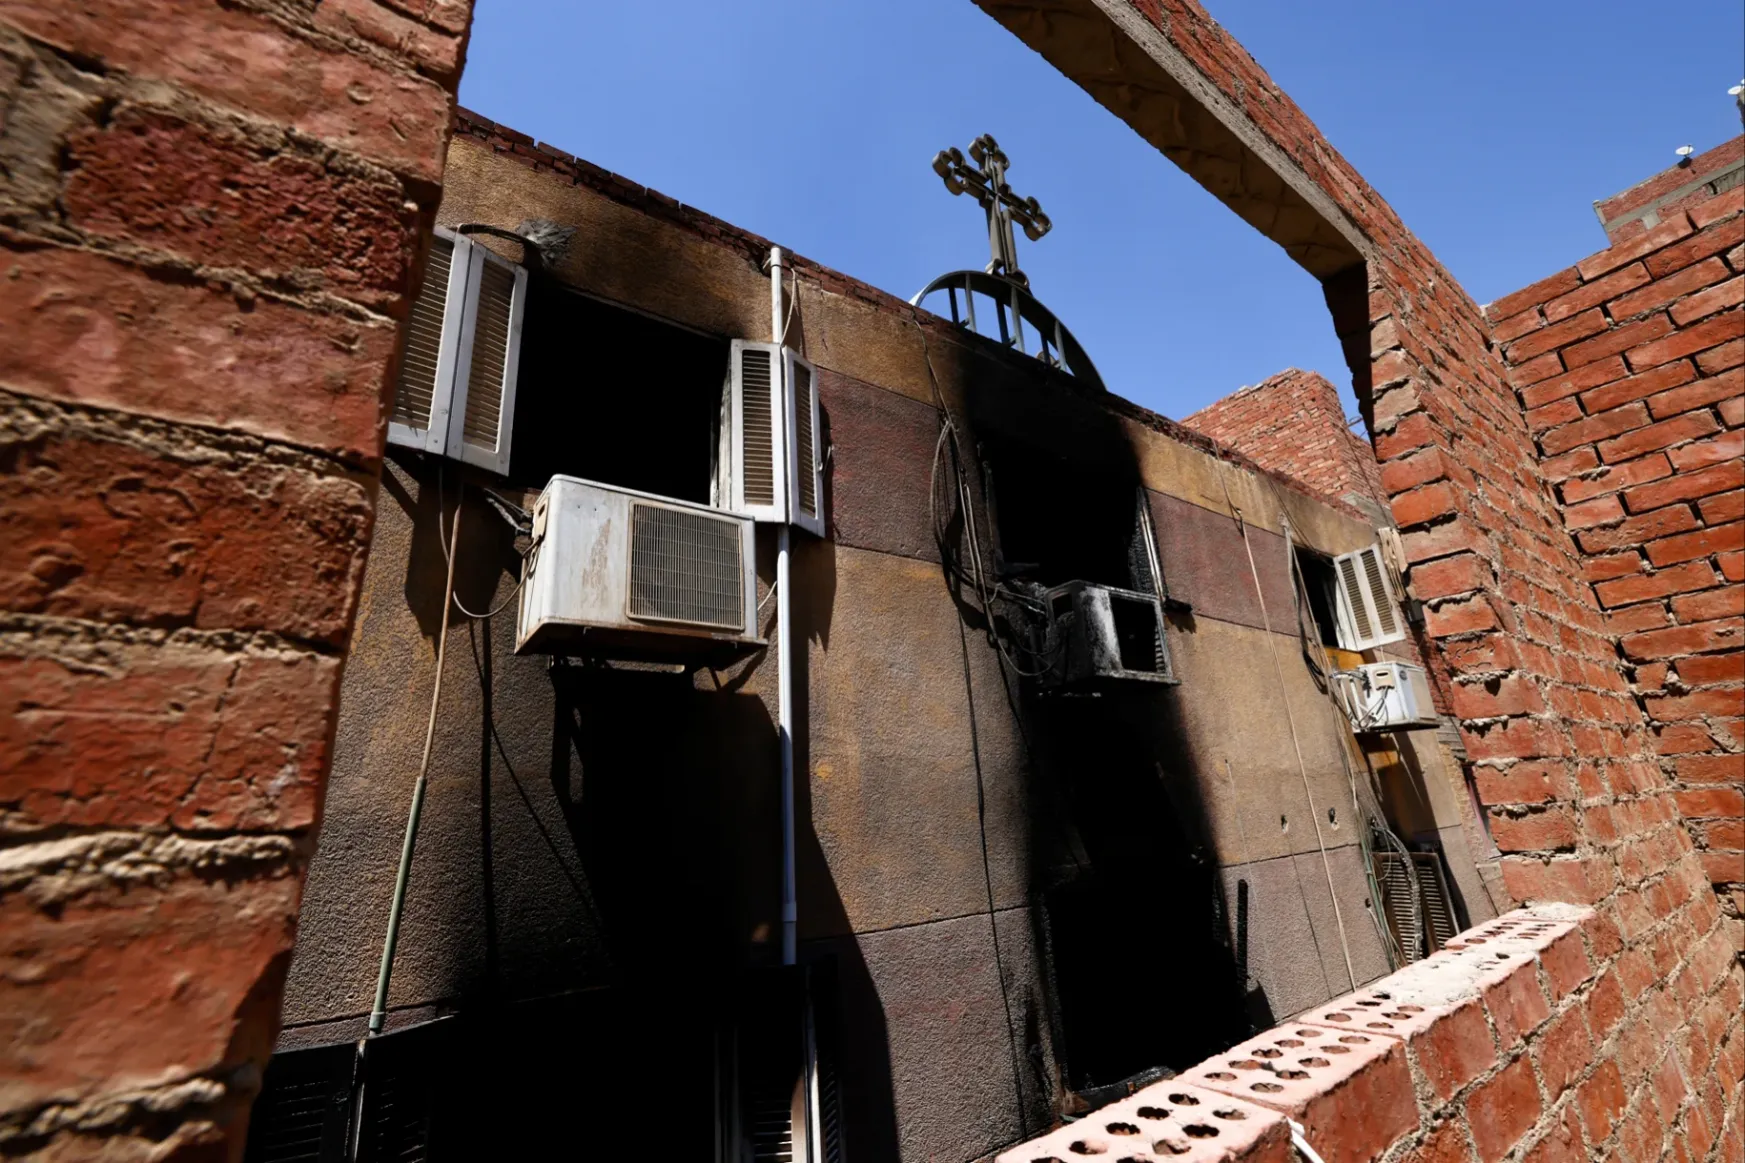 Legalább negyvenen meghaltak, mikor kigyulladt egy kairói kopt keresztény templom